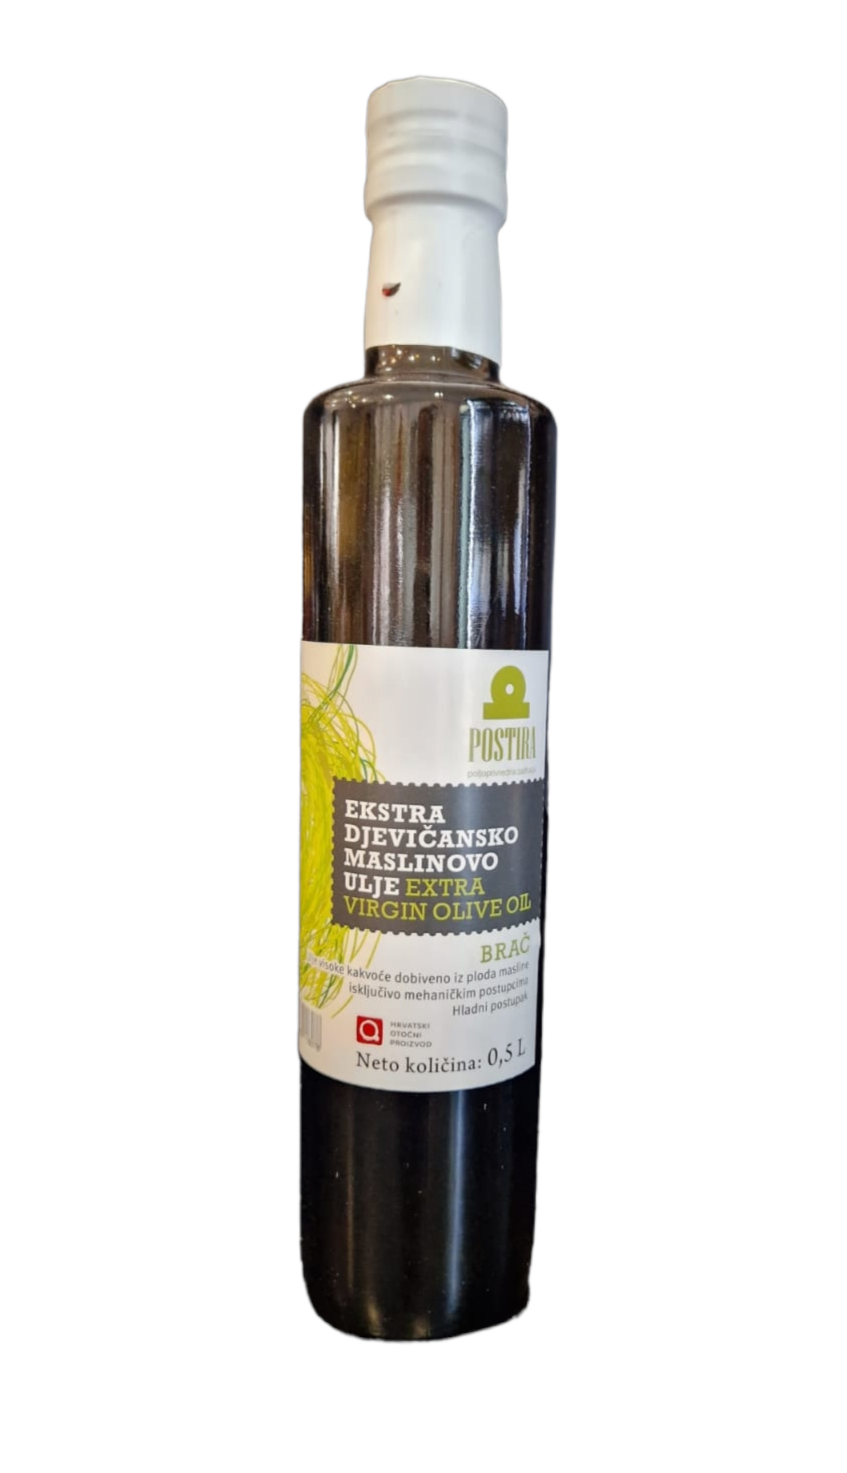 Ekstra djevičansko maslinovo ulje 0,5L